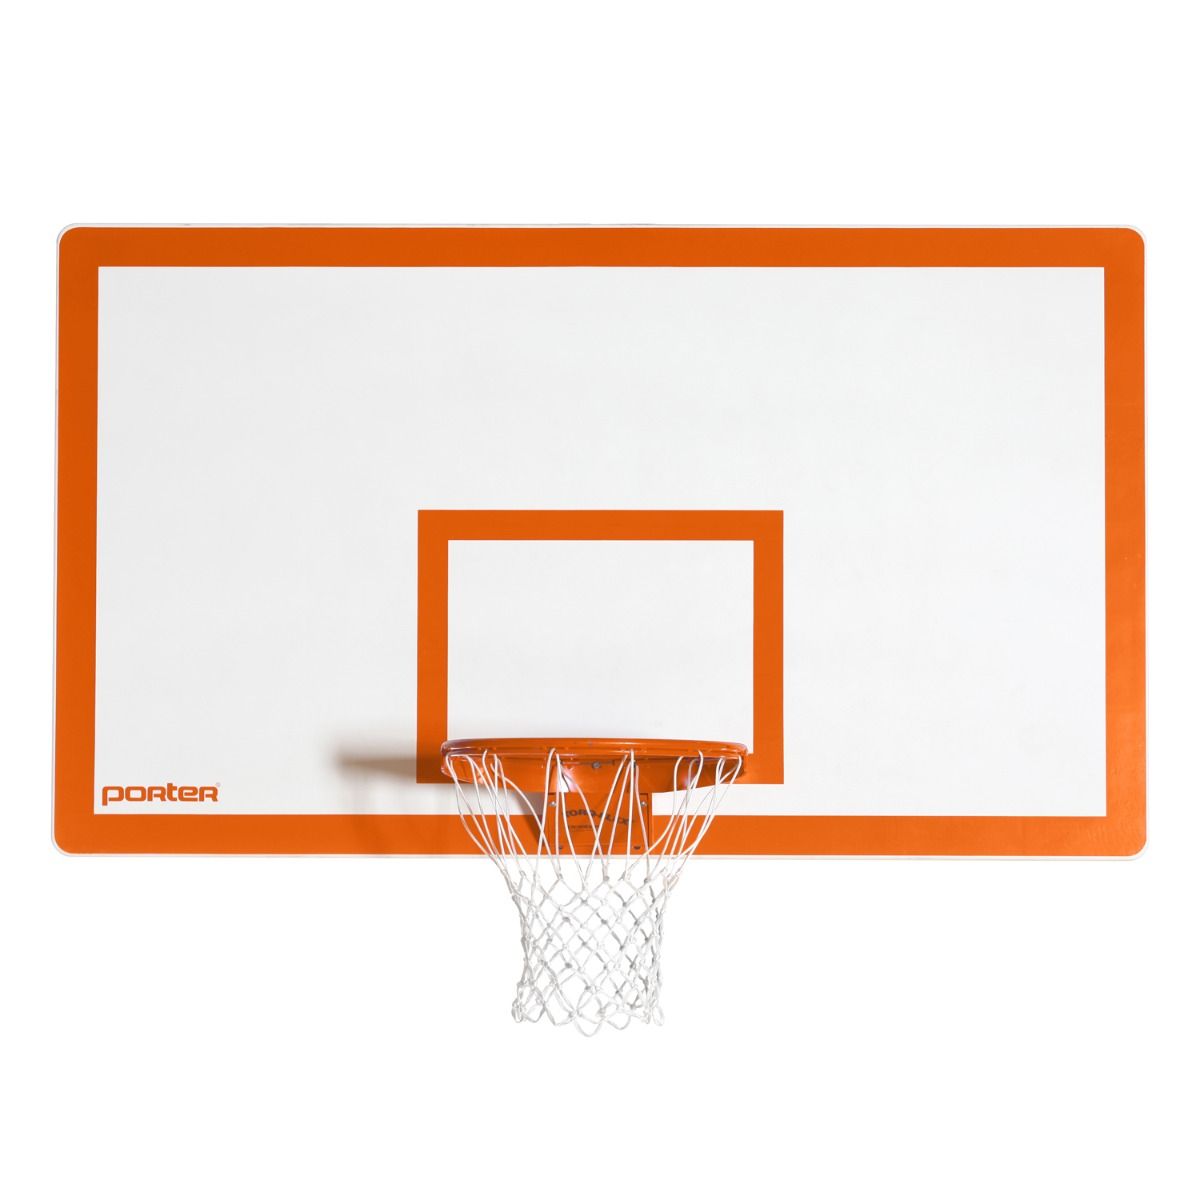 Fiberglass Rectangular Basketball Outdoor Backboard